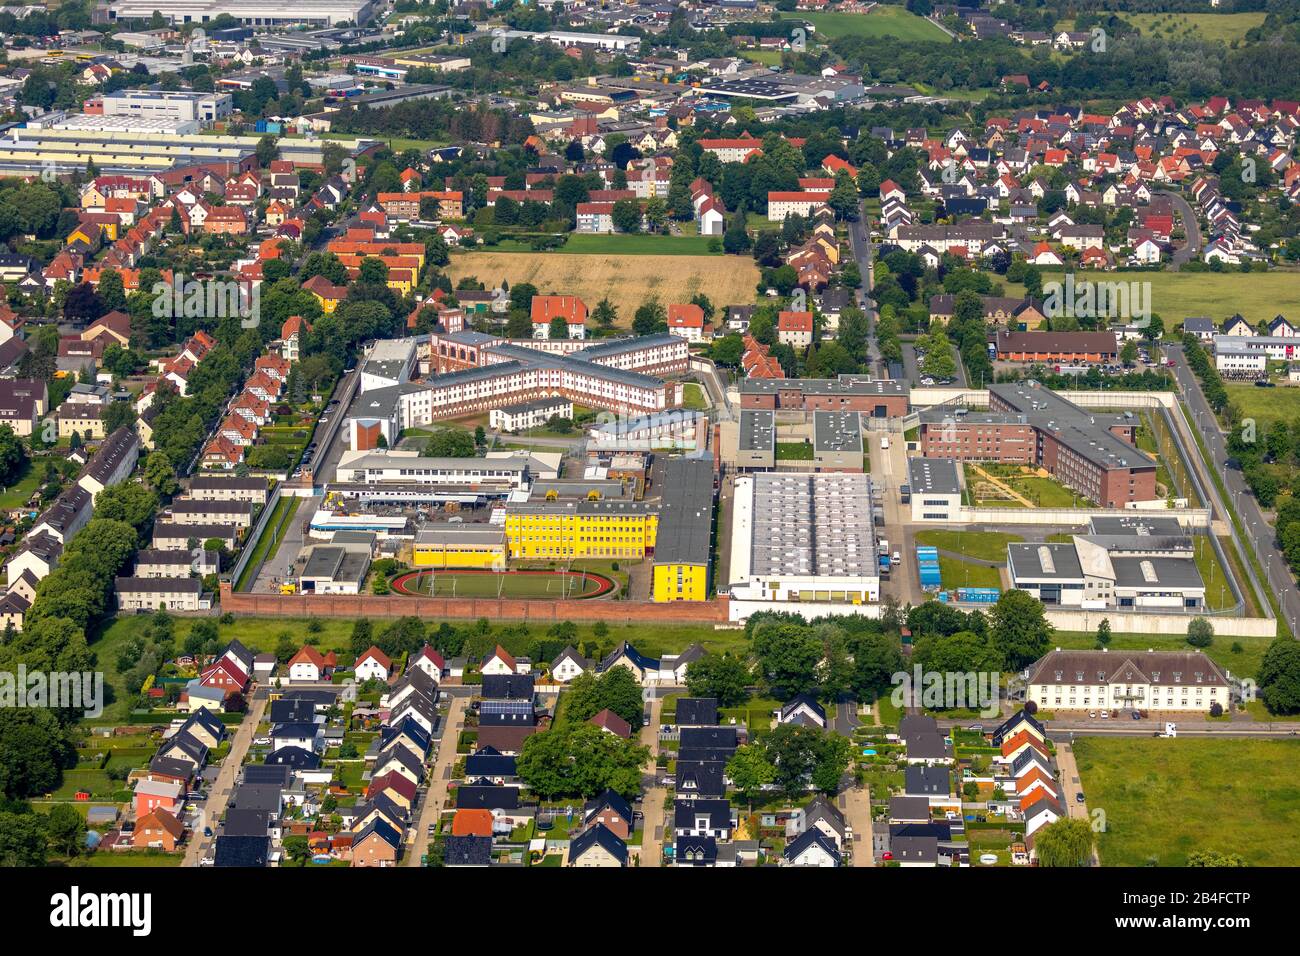 Vue aérienne de la prison de Werl vue de l'est, la prison de Werl à Werl dans le Soester Börde dans l'état de Rhénanie-du-Nord-Westphalie en Allemagne, Werl, Soester Börde, Rhénanie-du-Nord-Westphalie, Allemagne, Loh, prison, prison, murs de prison, bâtiments de prison rénovés, prison, felonies Banque D'Images